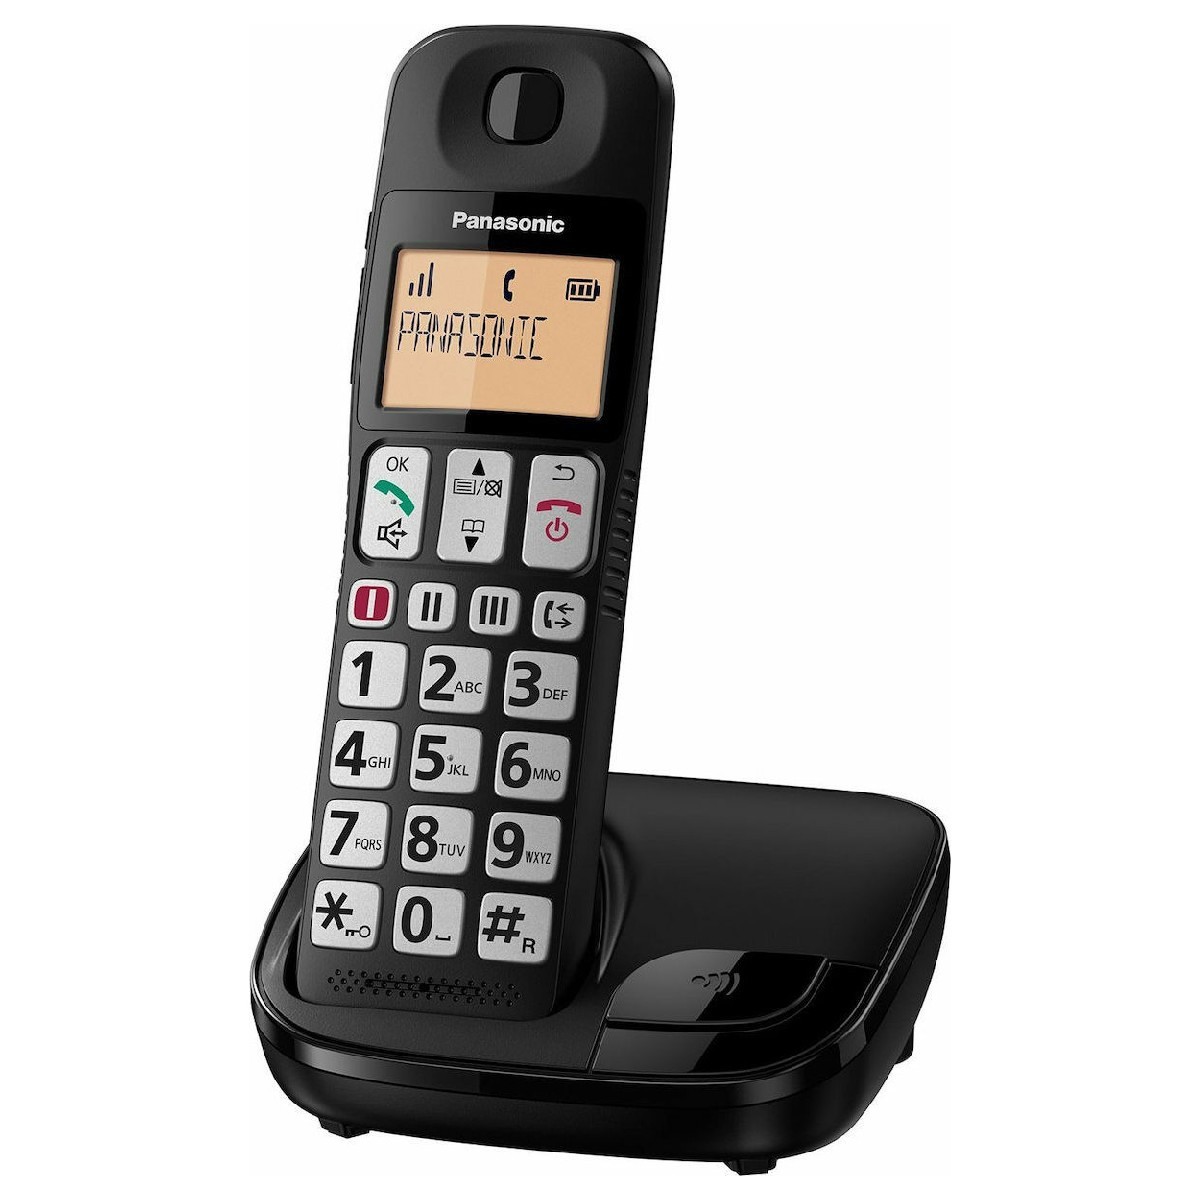 Ασύρματο Ψηφιακό Τηλέφωνο Panasonic KX-TGE310GRB Μαύρο με Ανοικτή Συνομιλία και Λειτουργία Eco